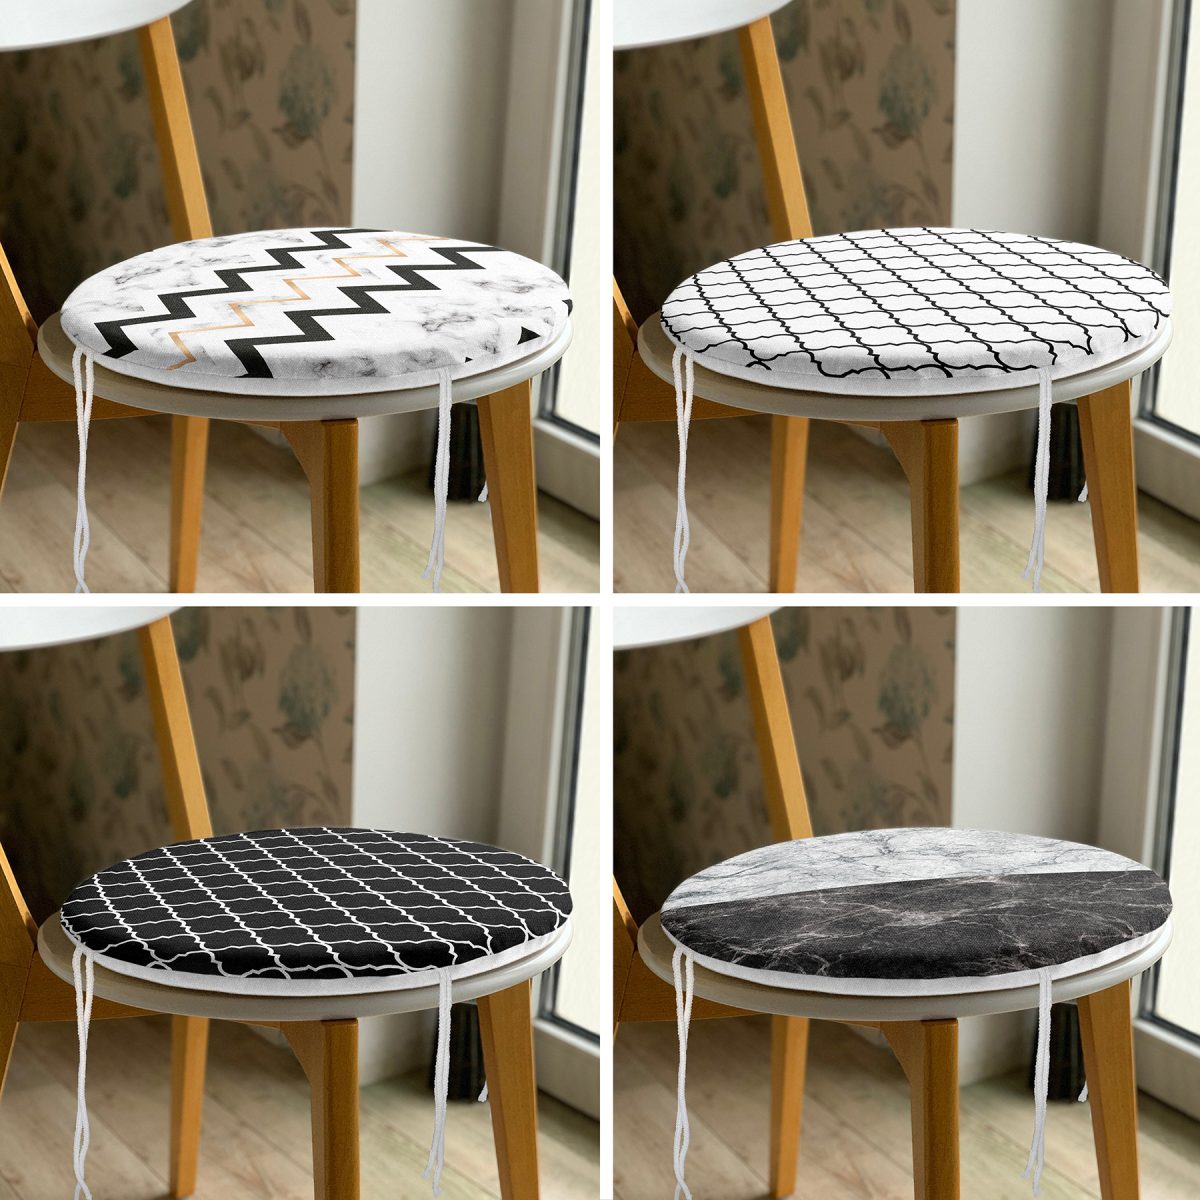 4'lü Mermer Tasarımlı Geometrik Motifli Yuvarlak Fermuarlı Sandalye Minderi Seti Realhomes